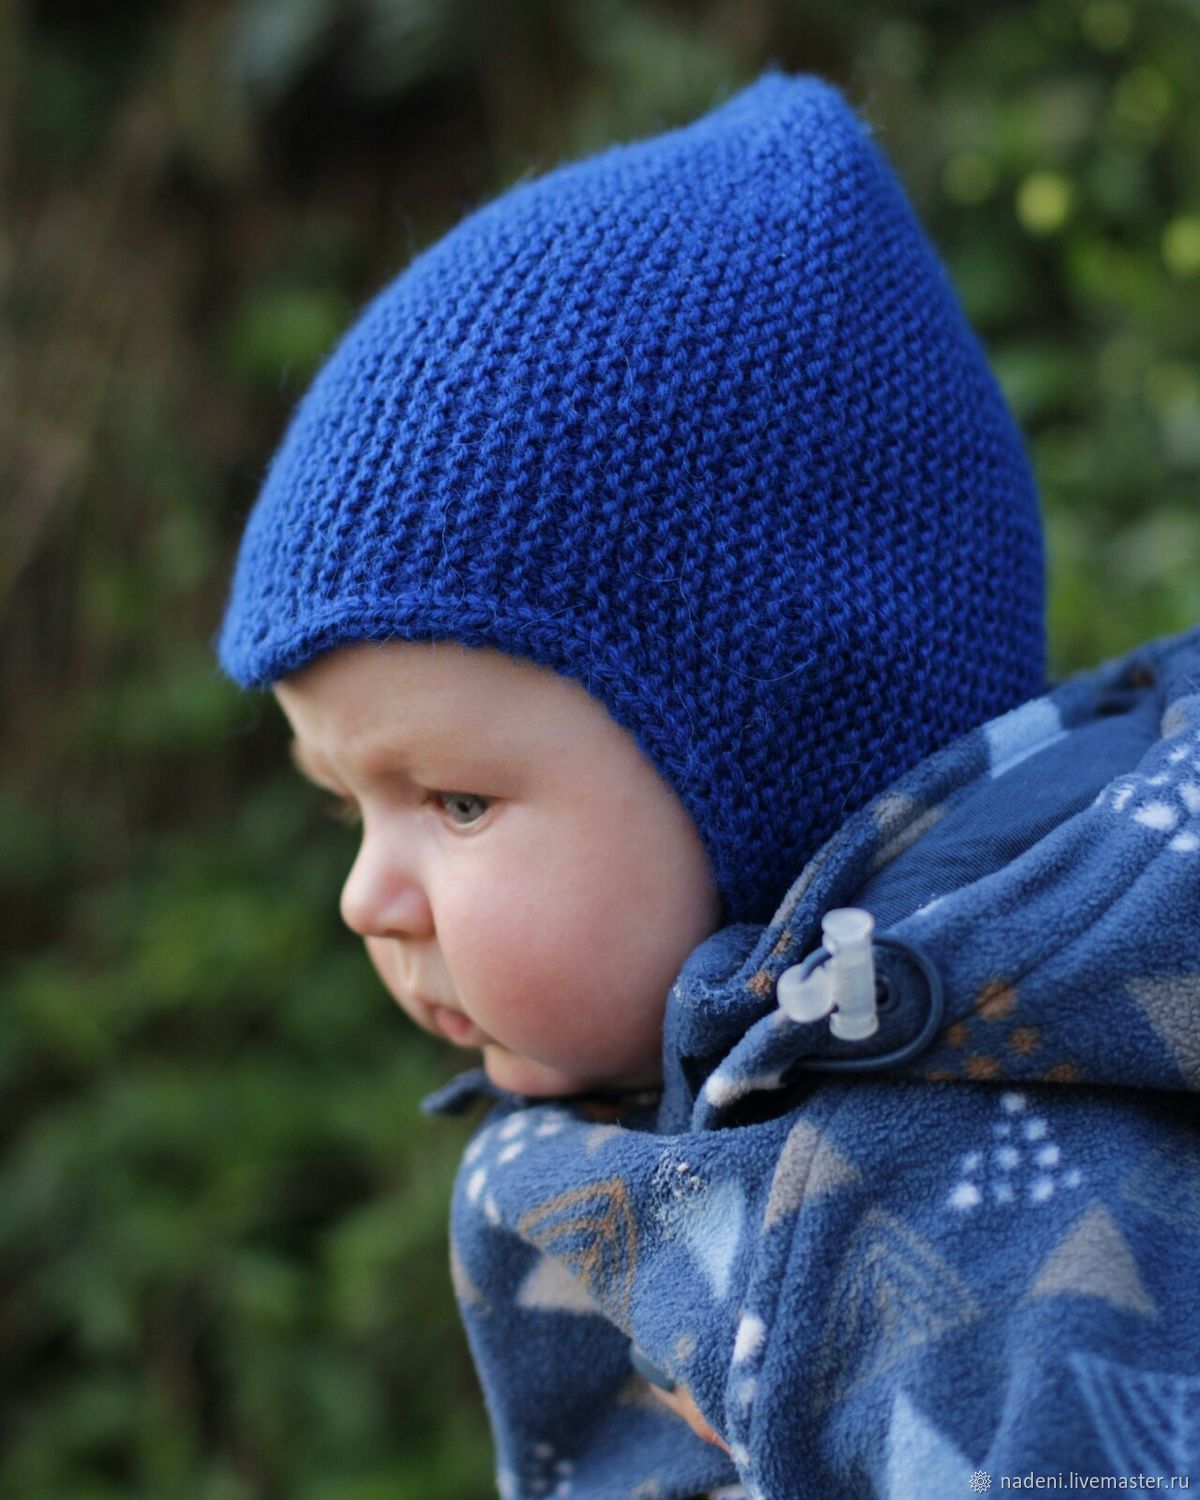 Шапка спицами для мальчика на весну, осень, зиму: описание и схема. как связать детскую шапку для мальчика спицами шлем, ушанку, миньон, с шарфом?